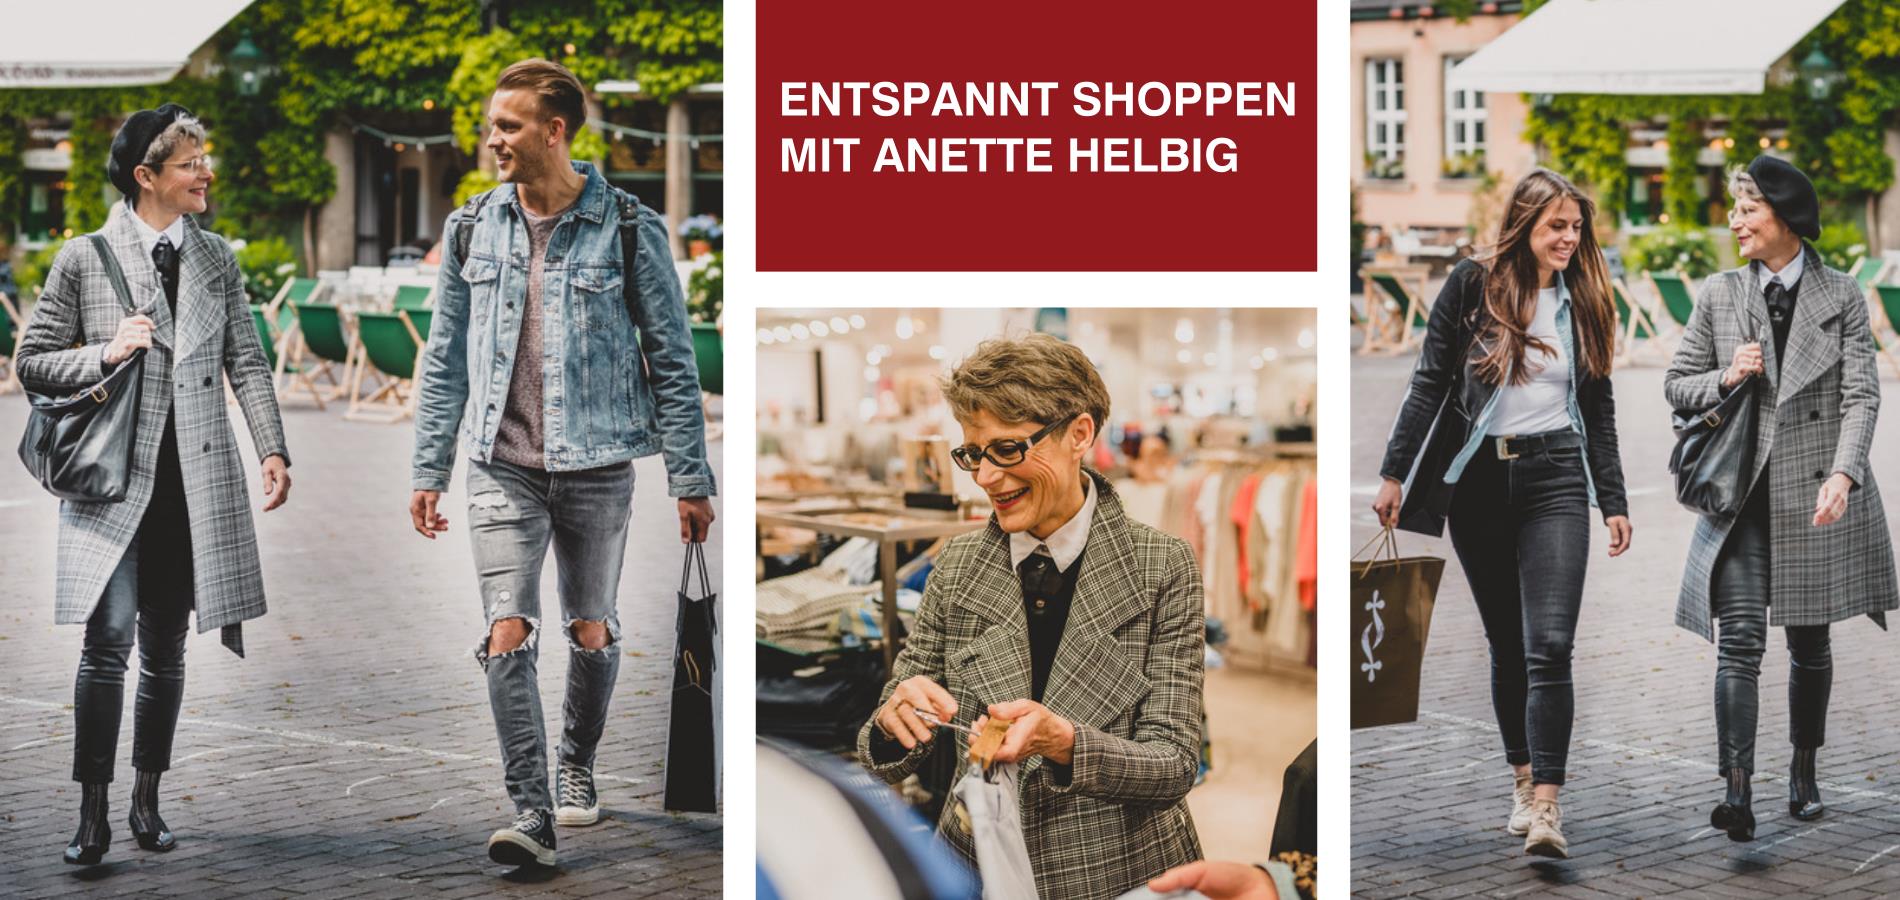 Entspannt shoppen mit Anette Helbig